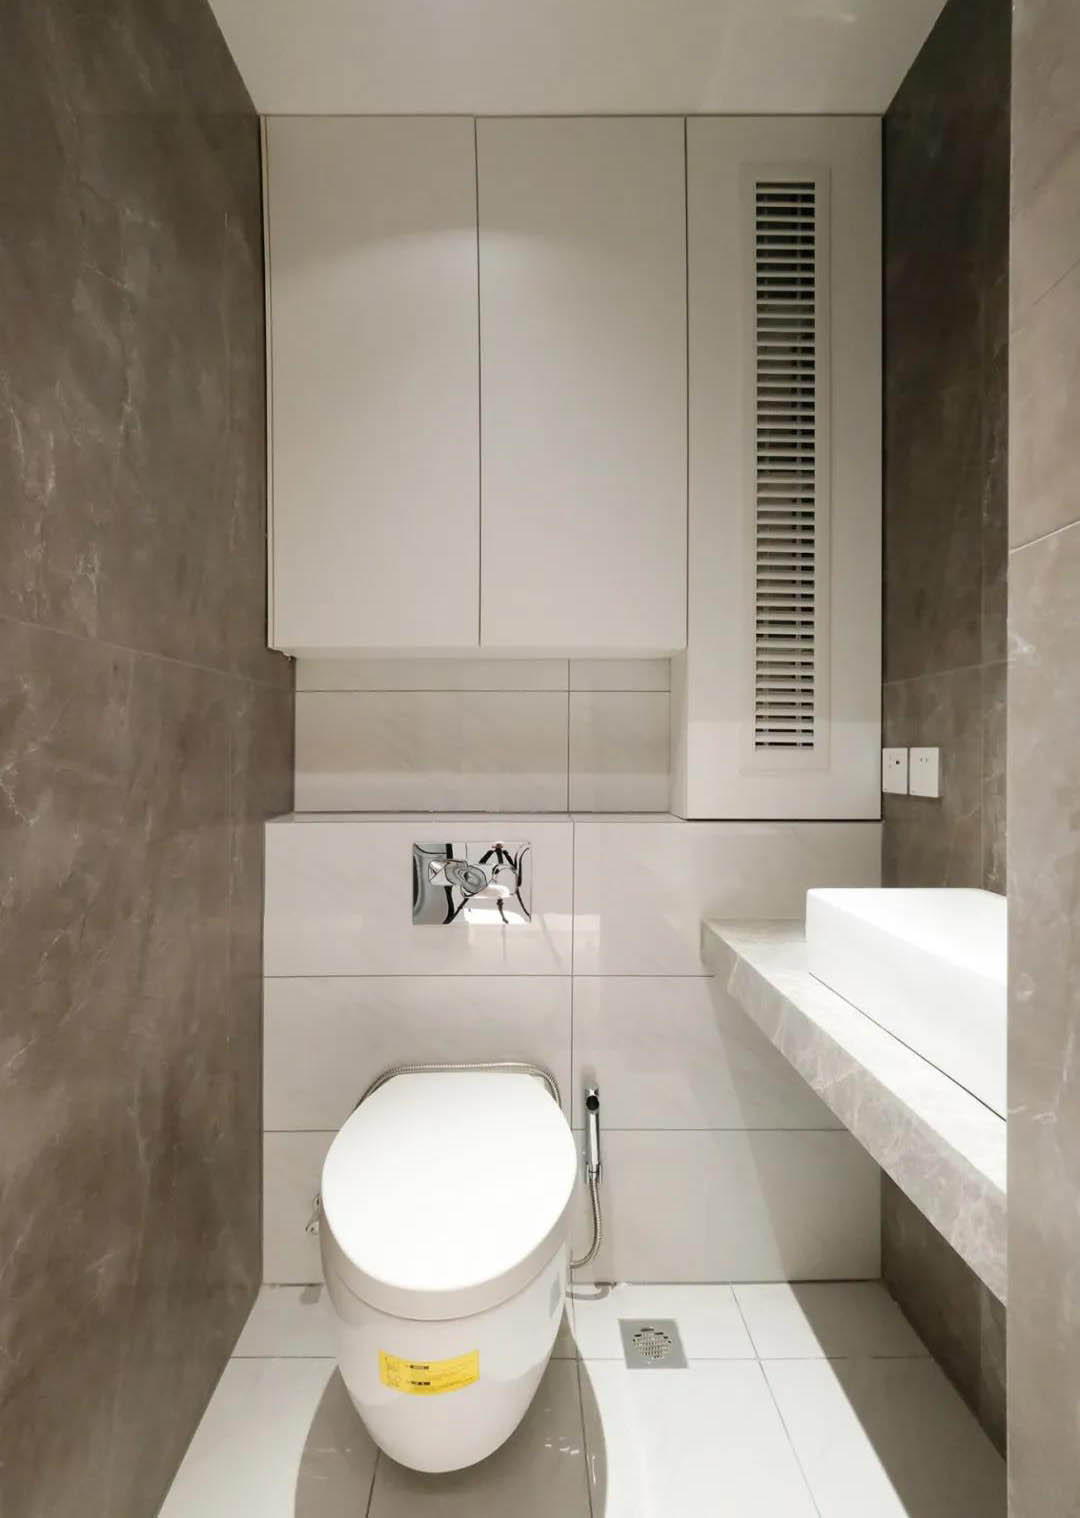 Phòng tắm bé như “nắm tay” cũng trở nên “thênh thang” nhờ những mẹo thiết kế và lưu trữ cực thông minh - Ảnh 7.